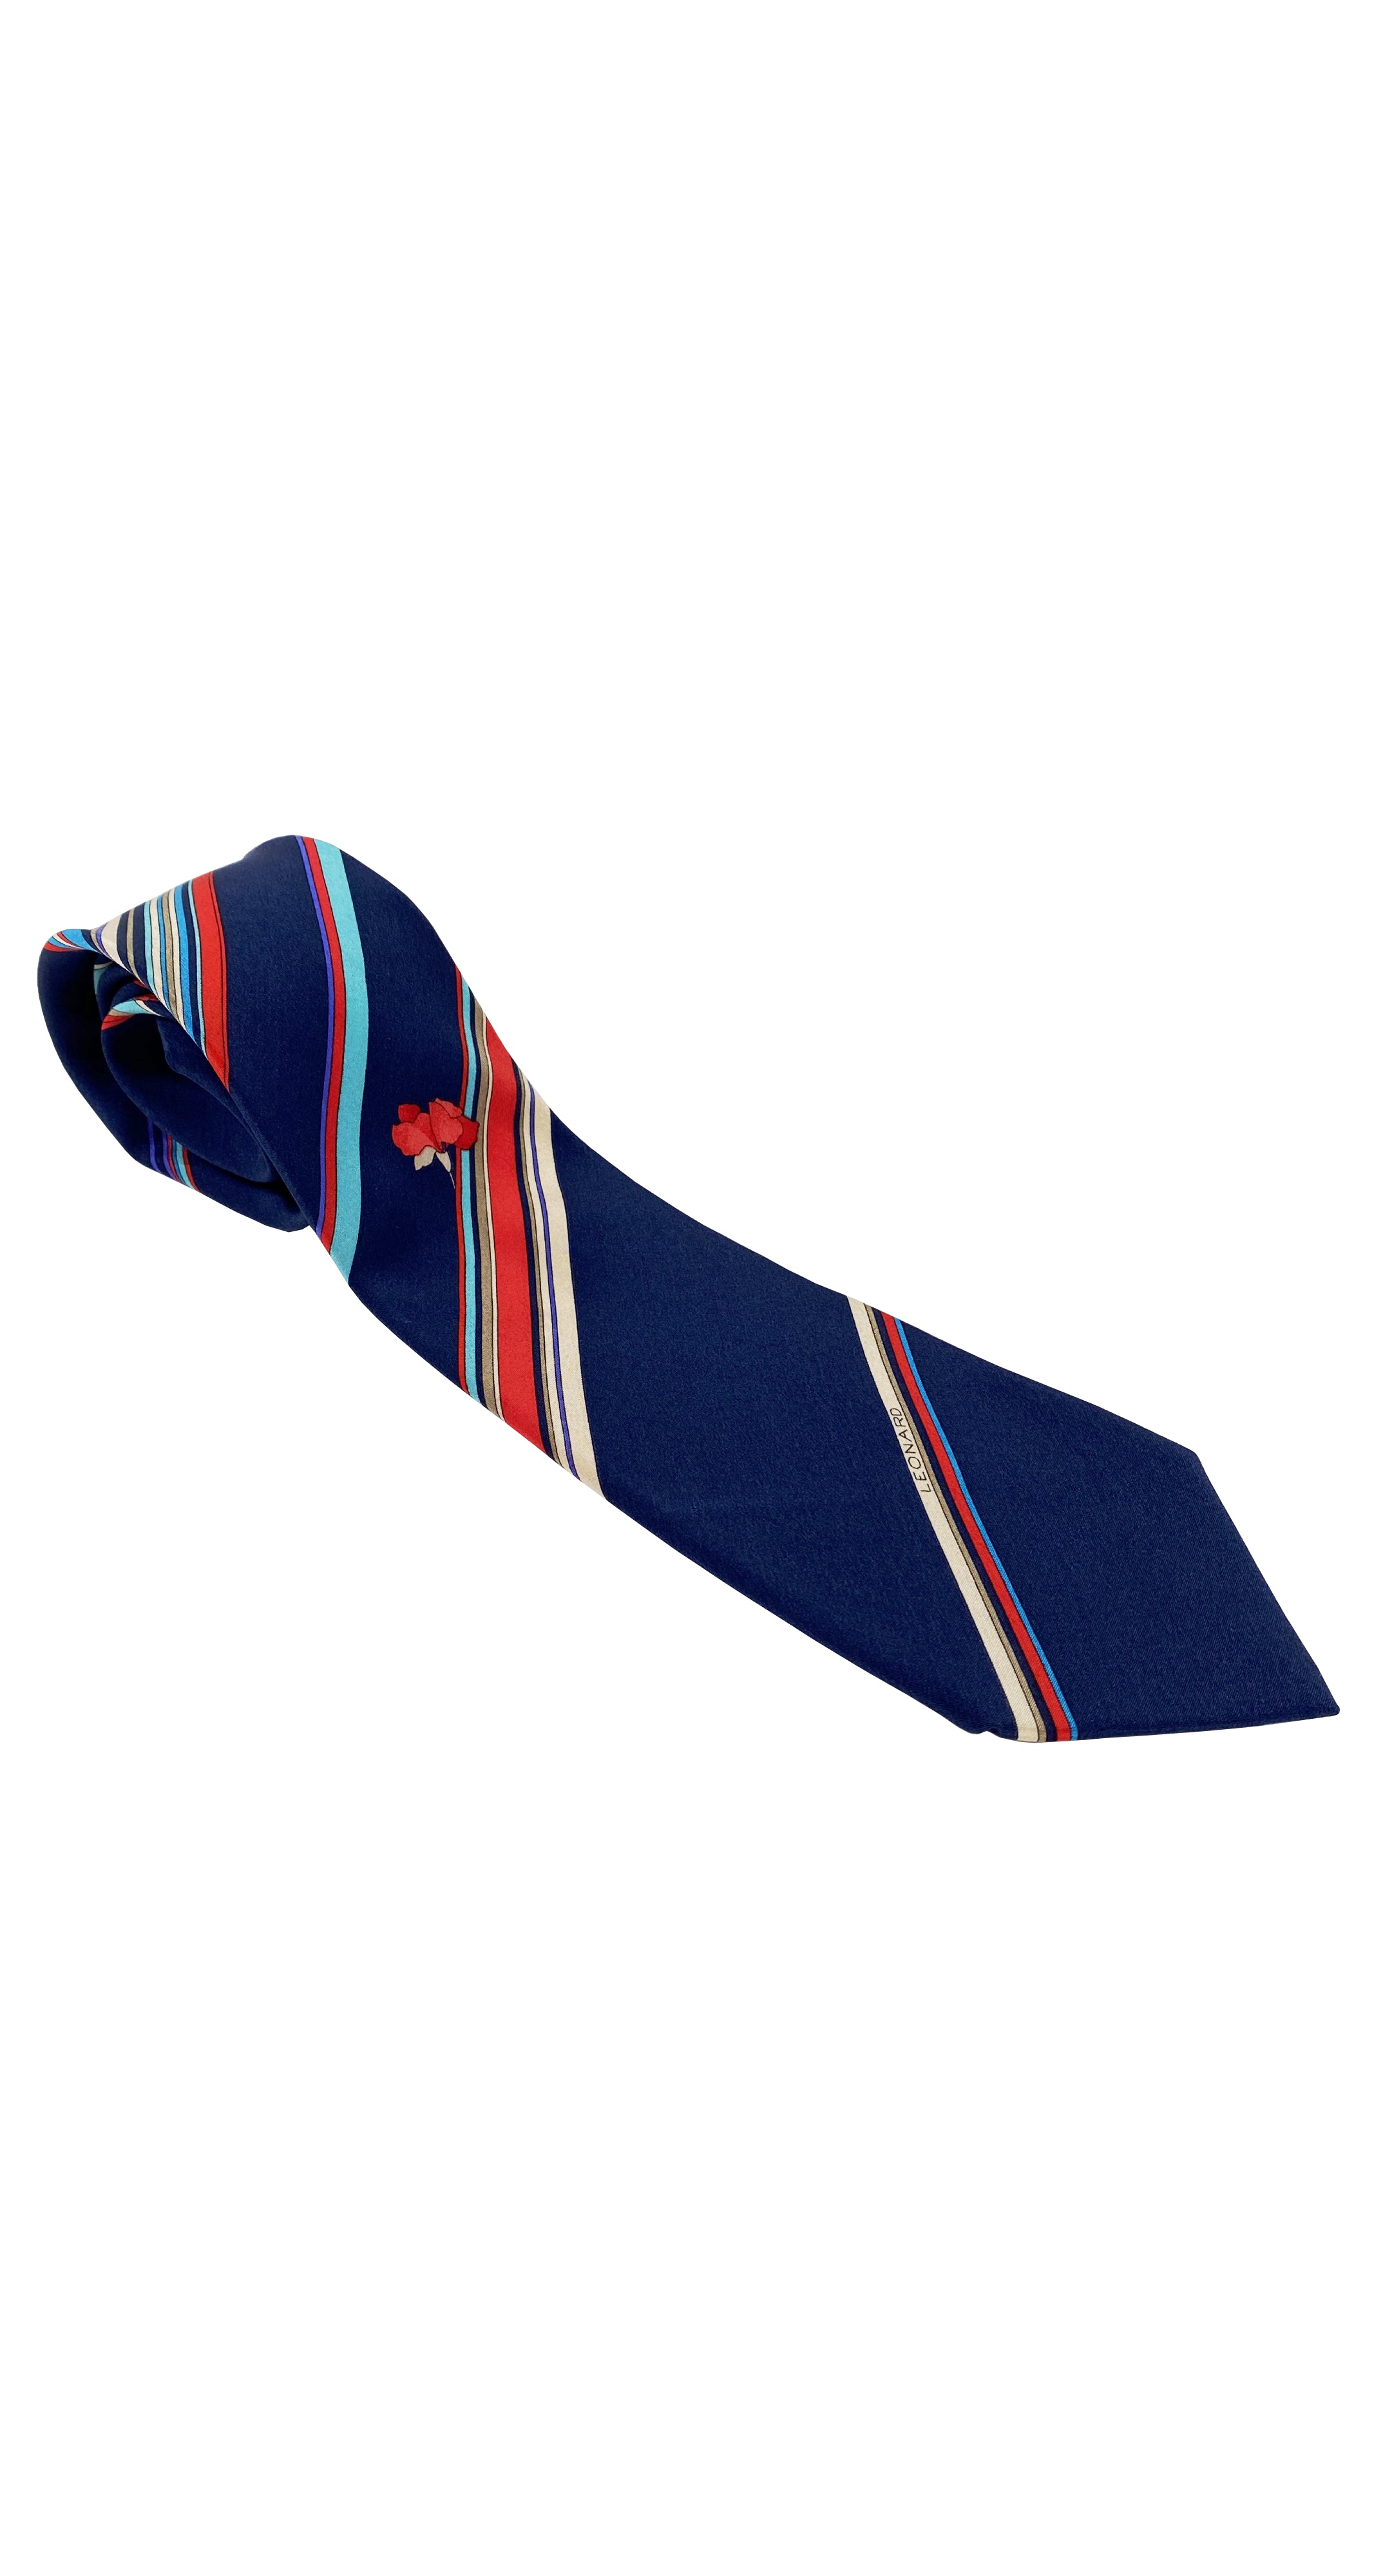 1970s Flower Striped Navy Silk Men's Tie